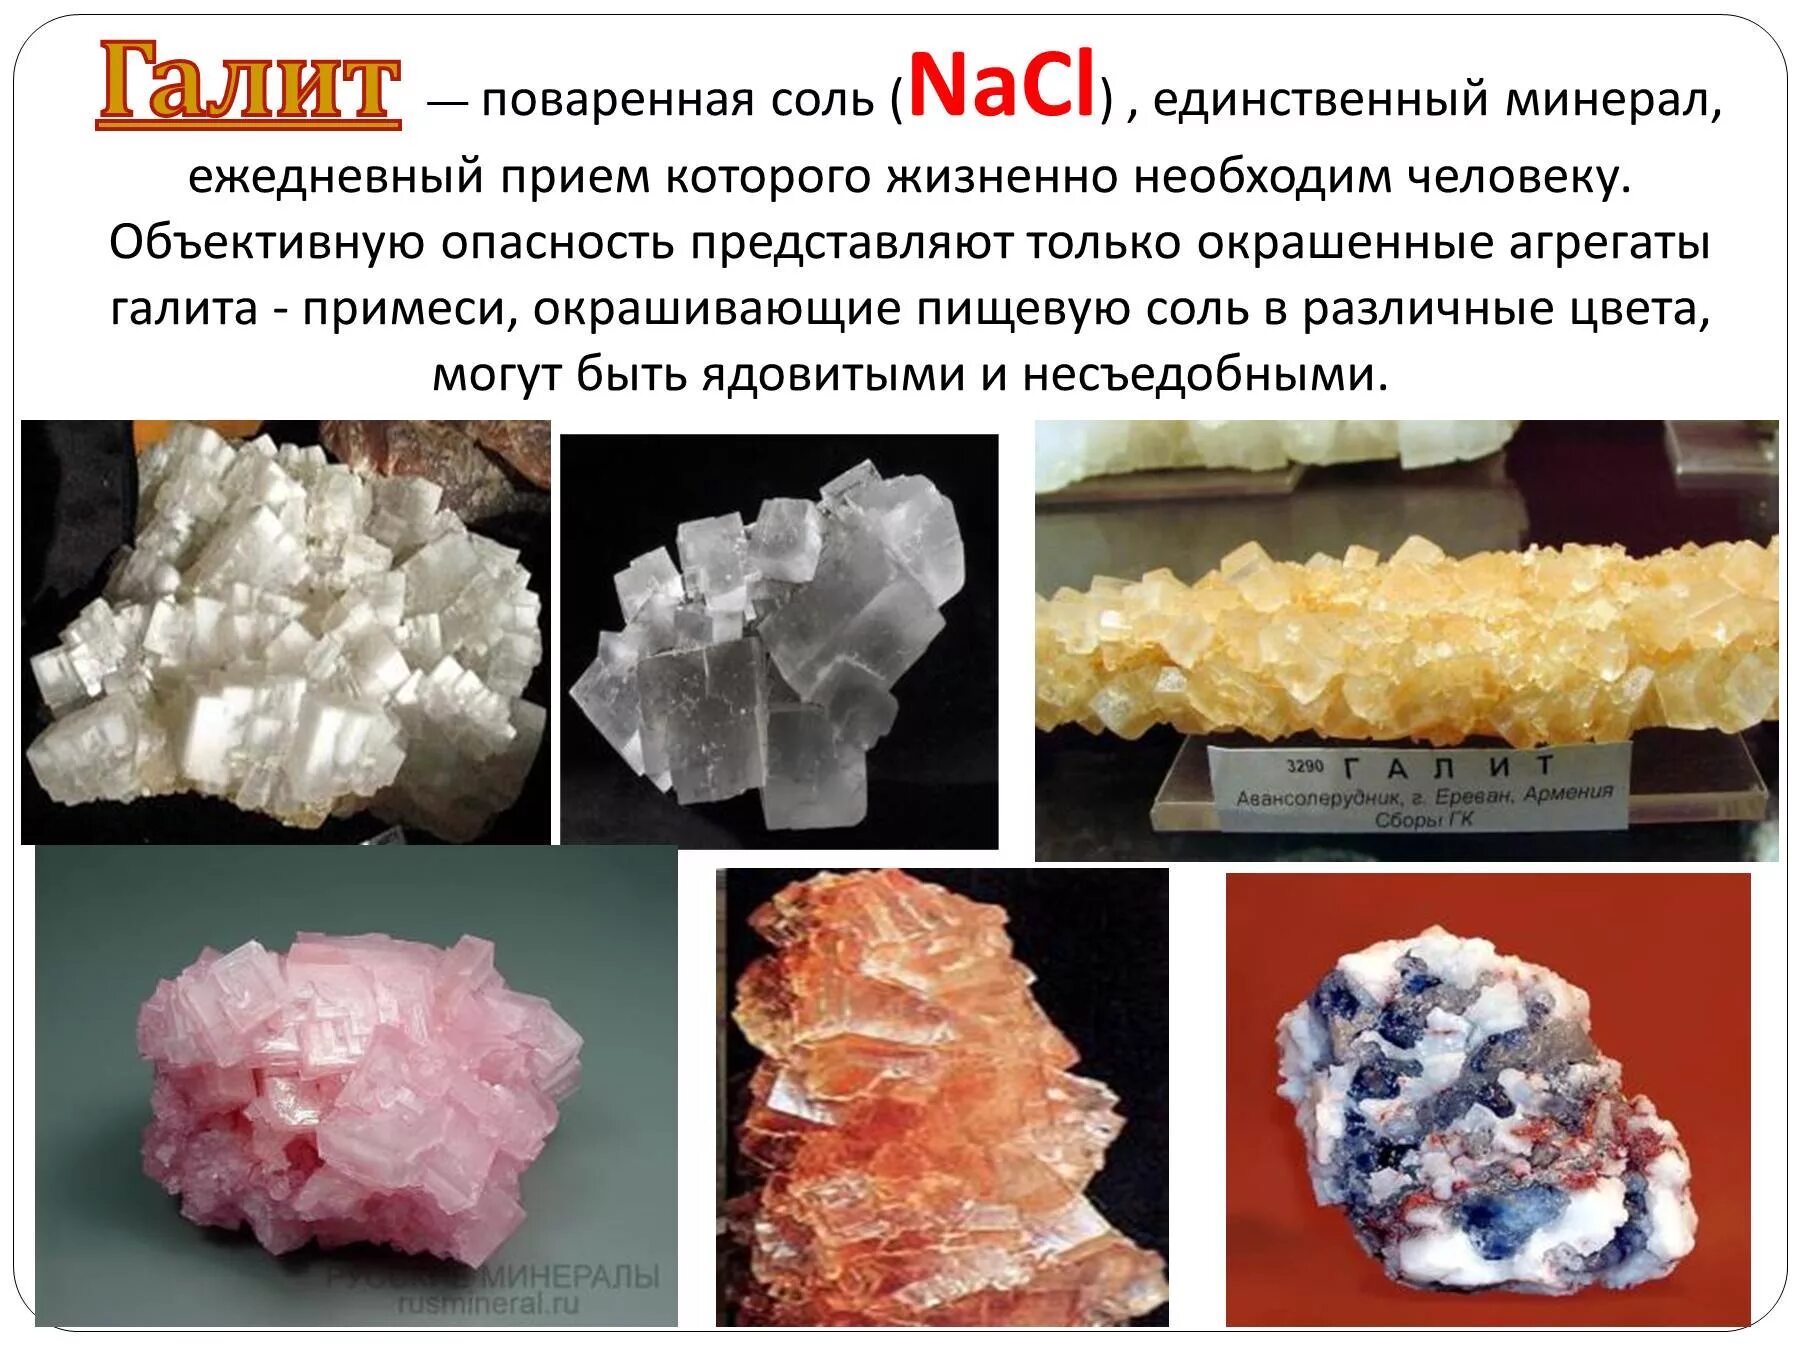 Nacl название класс. Поваренная соль, каменная соль, галит — NACL. NACL – галит (каменная соль). Минерал галит формула. Галит класс минерала.